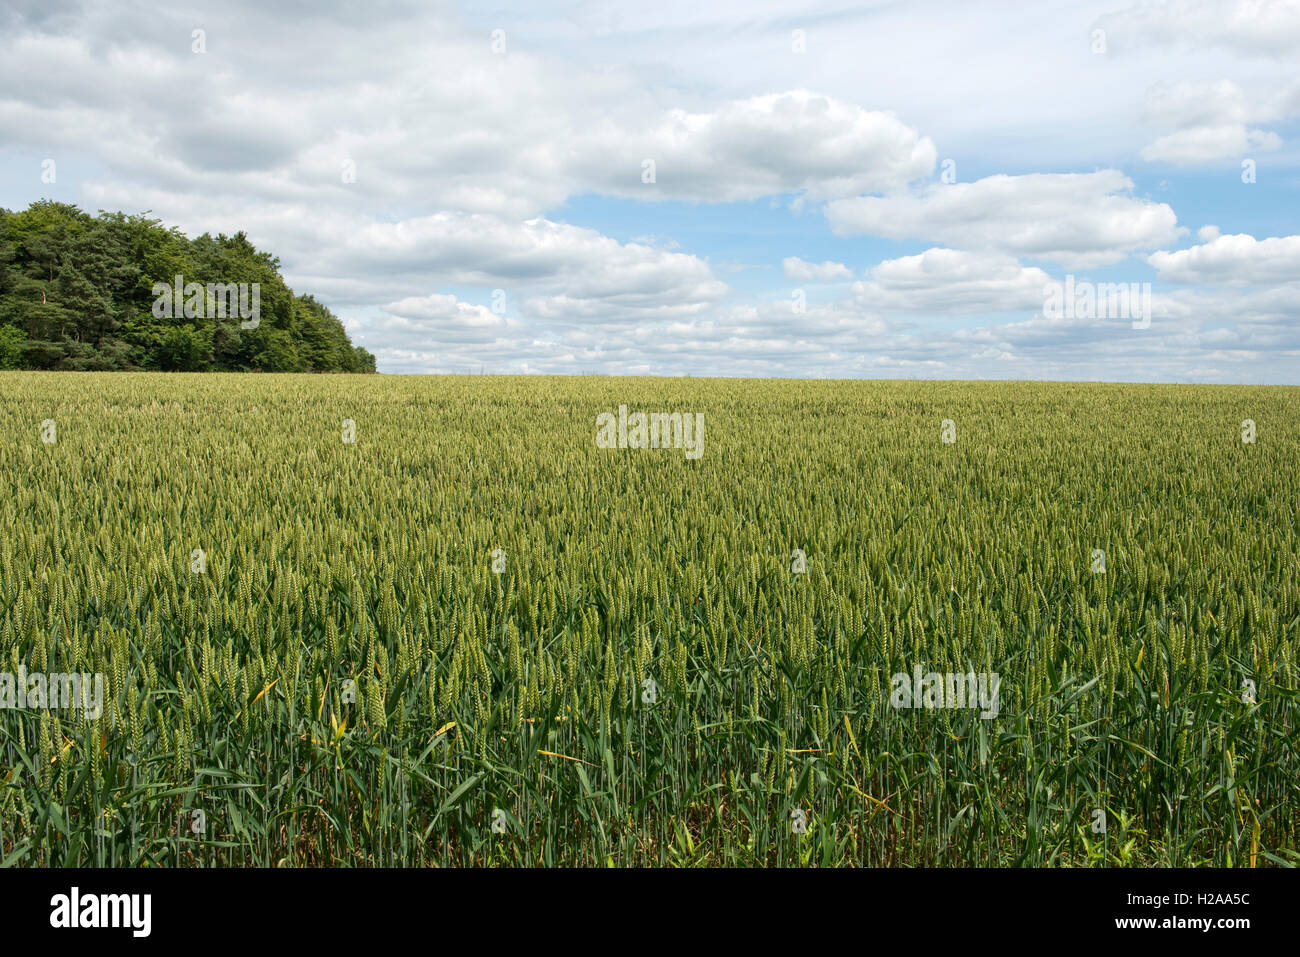 La récolte de blé d'hiver en vert de l'oreille non mûres sur une belle journée d'été, Berkshire, Juillet Banque D'Images